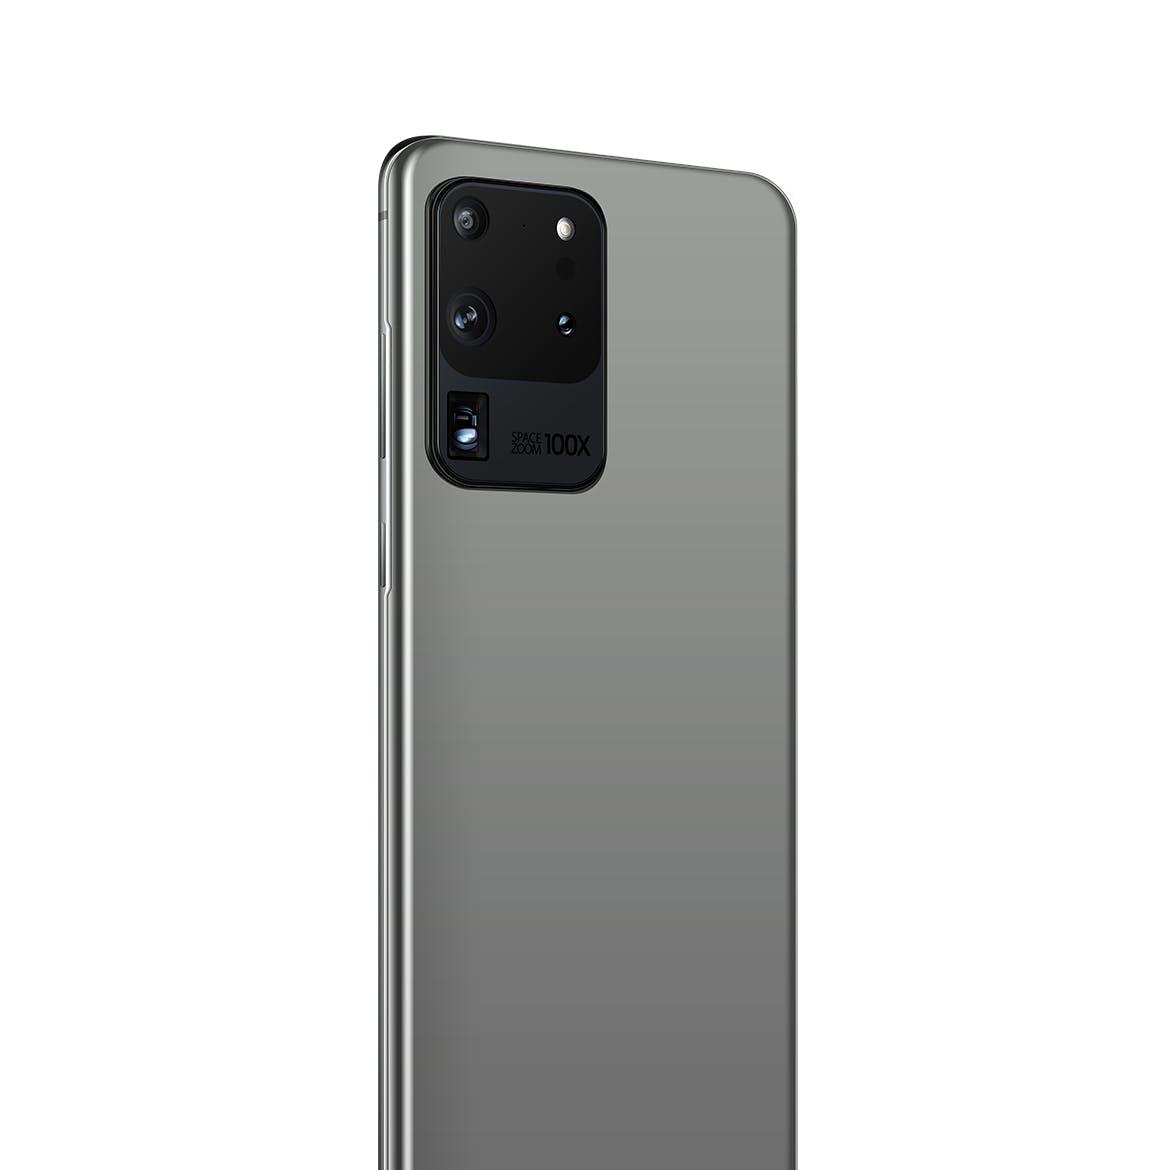 三星Galaxy S20 Ultra智能手机UI设计屏幕预览蚂蚁素材精选样机 S20 Ultra Layered PSD Mockups插图(4)